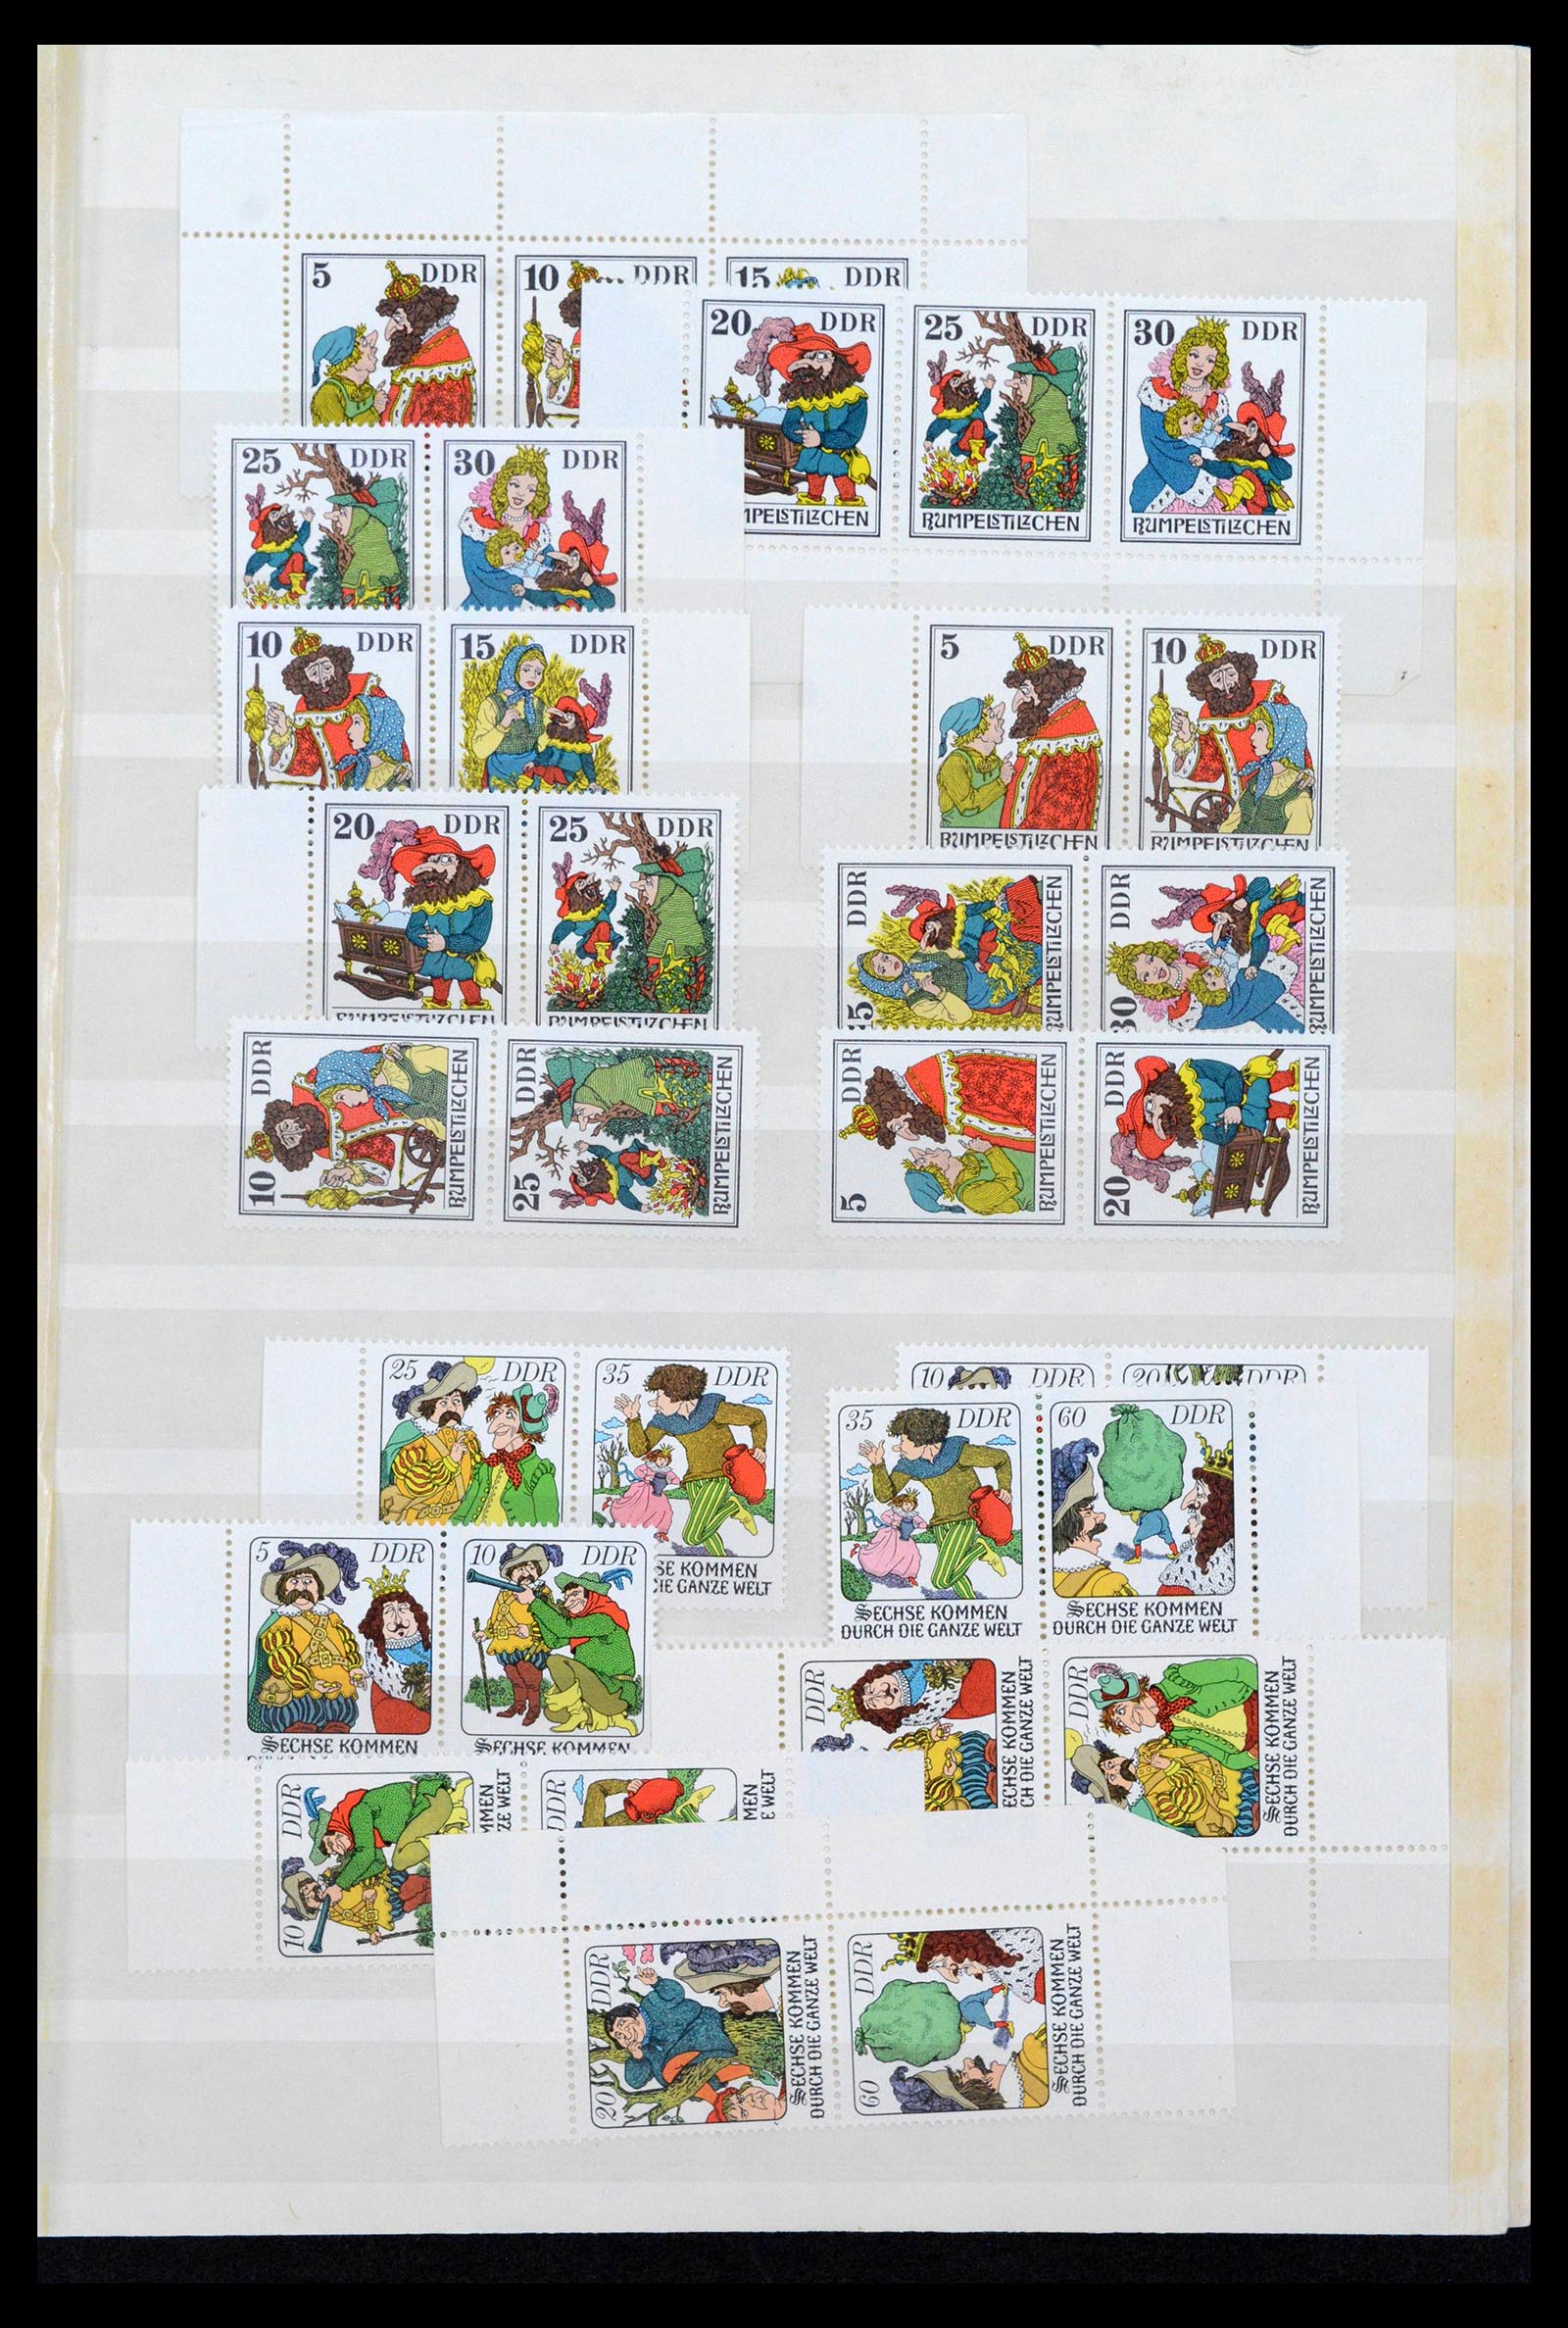 38188 0089 - Postzegelverzameling 38188 DDR combinaties 1955-1990.